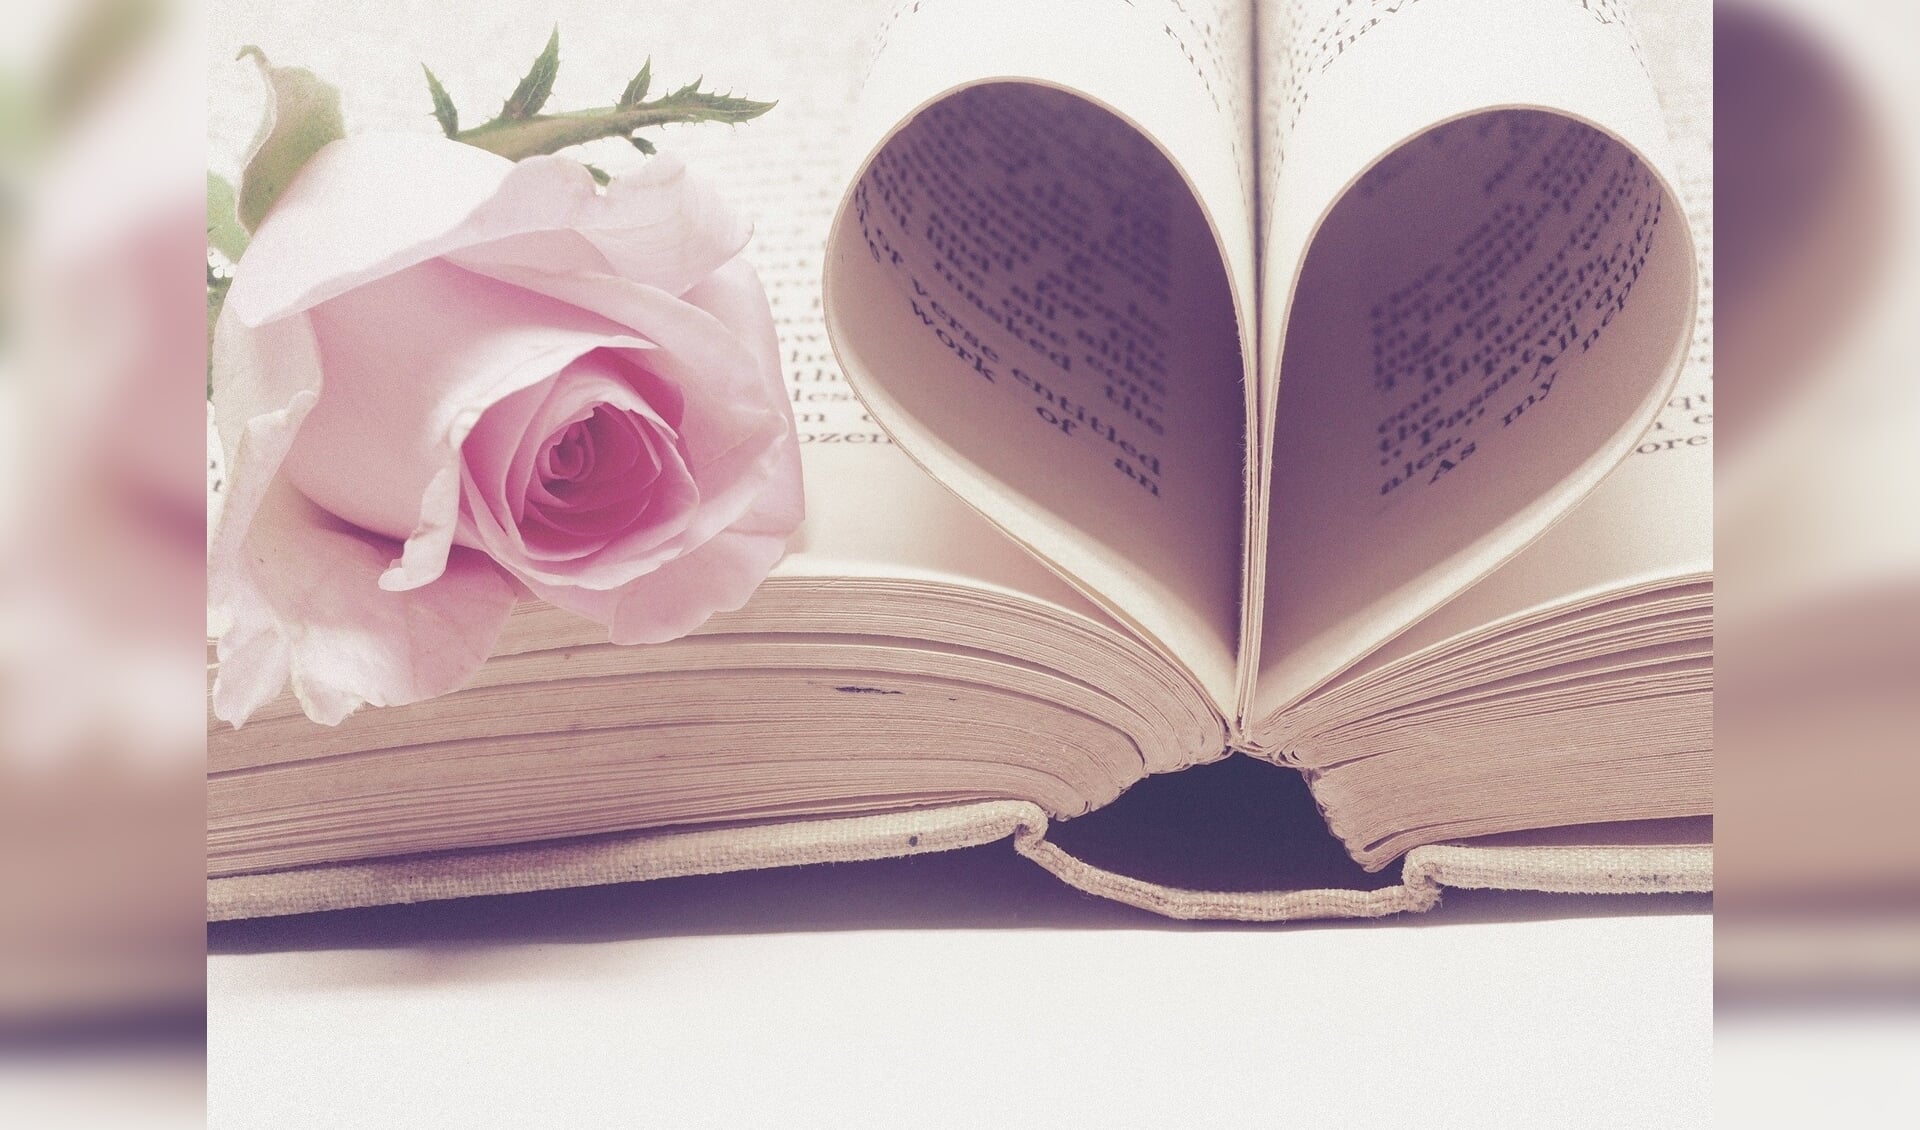 Valentijntje: Schrijf een kort gedichtje of liefdesuiting in de krant voor jouw Valentijn!